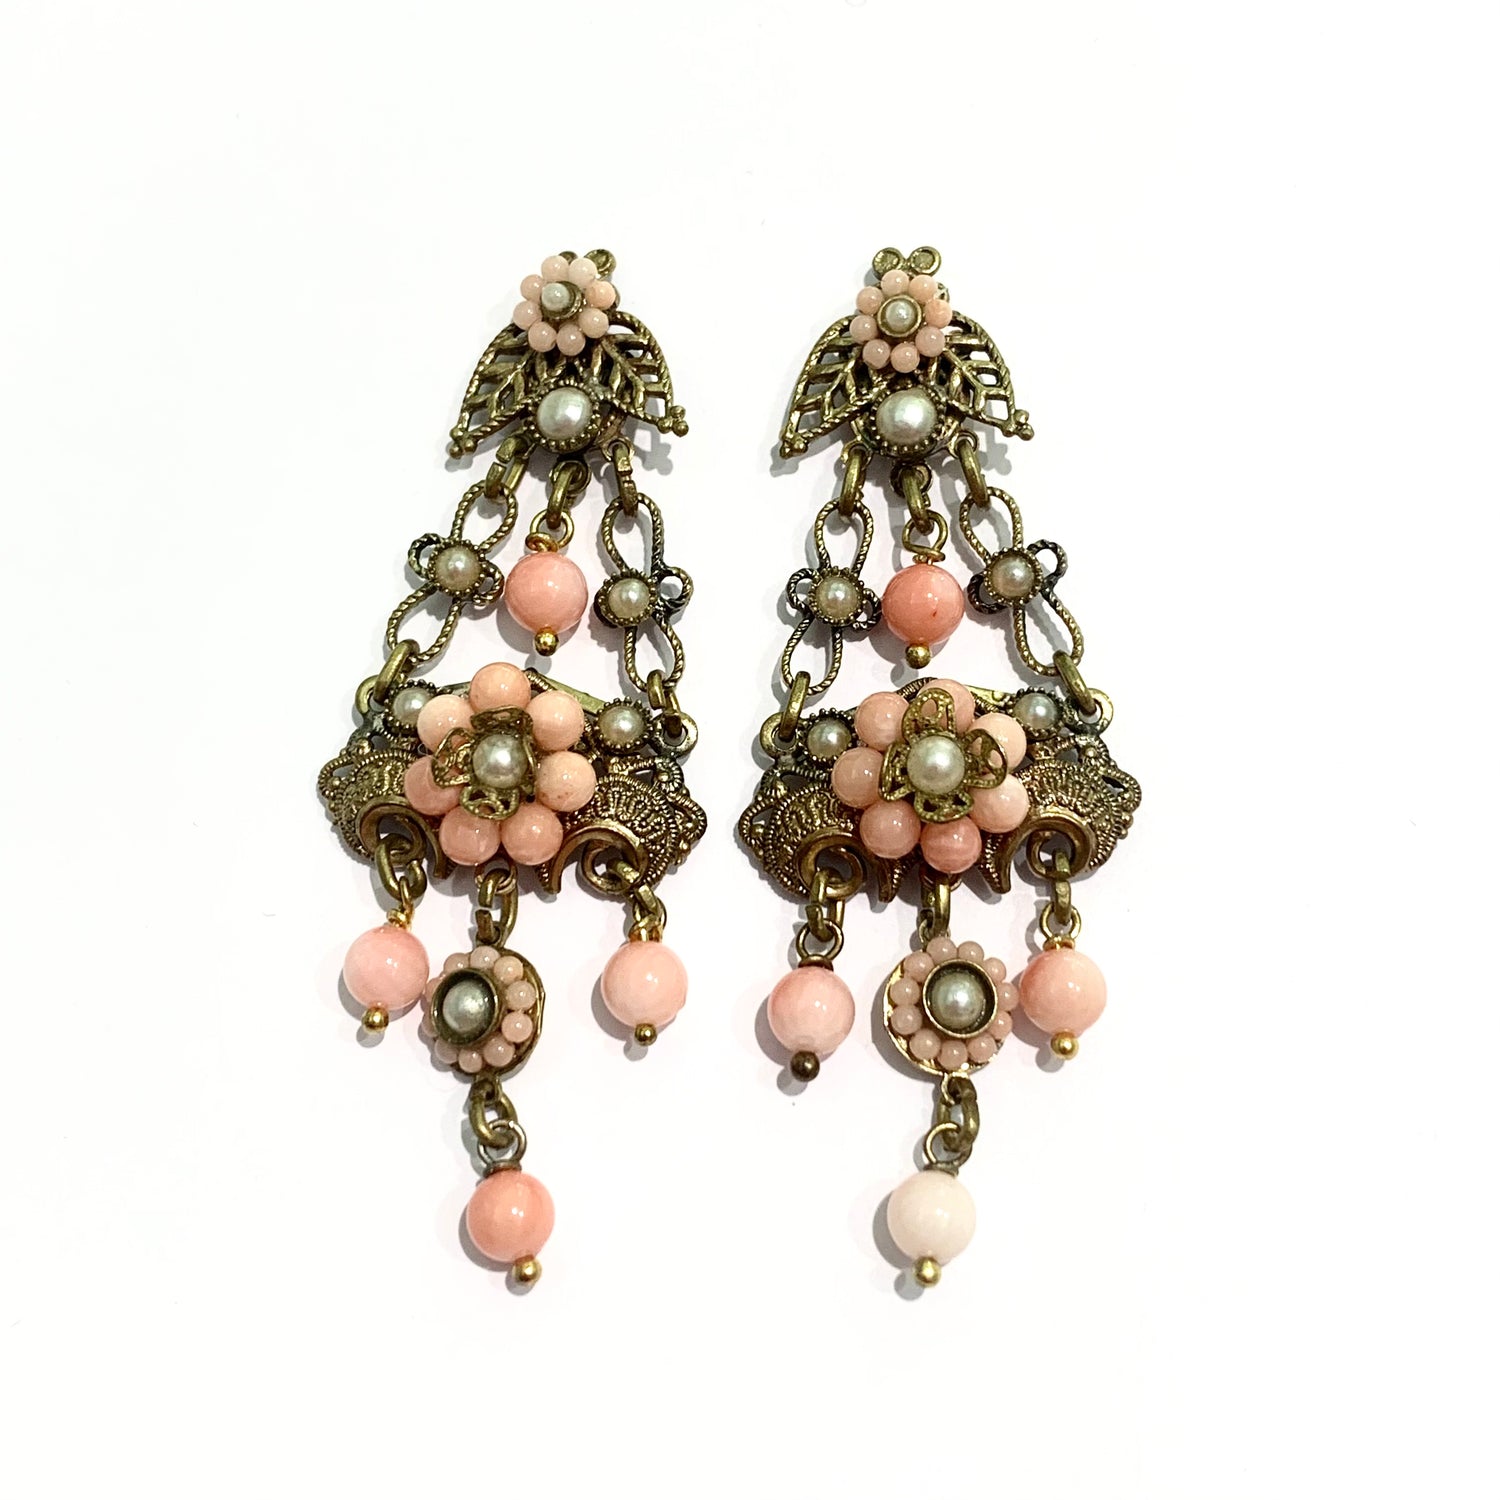 Orecchini pendenti in bijoux bagnati in oro giallo con perline color corallo rosa.  Lunghezza totale 6,5 cm.  Larghezza nella parte più ampia 3 cm.  Chiusura con farfalline.  Spedizione gratuita con confezione regalo. 